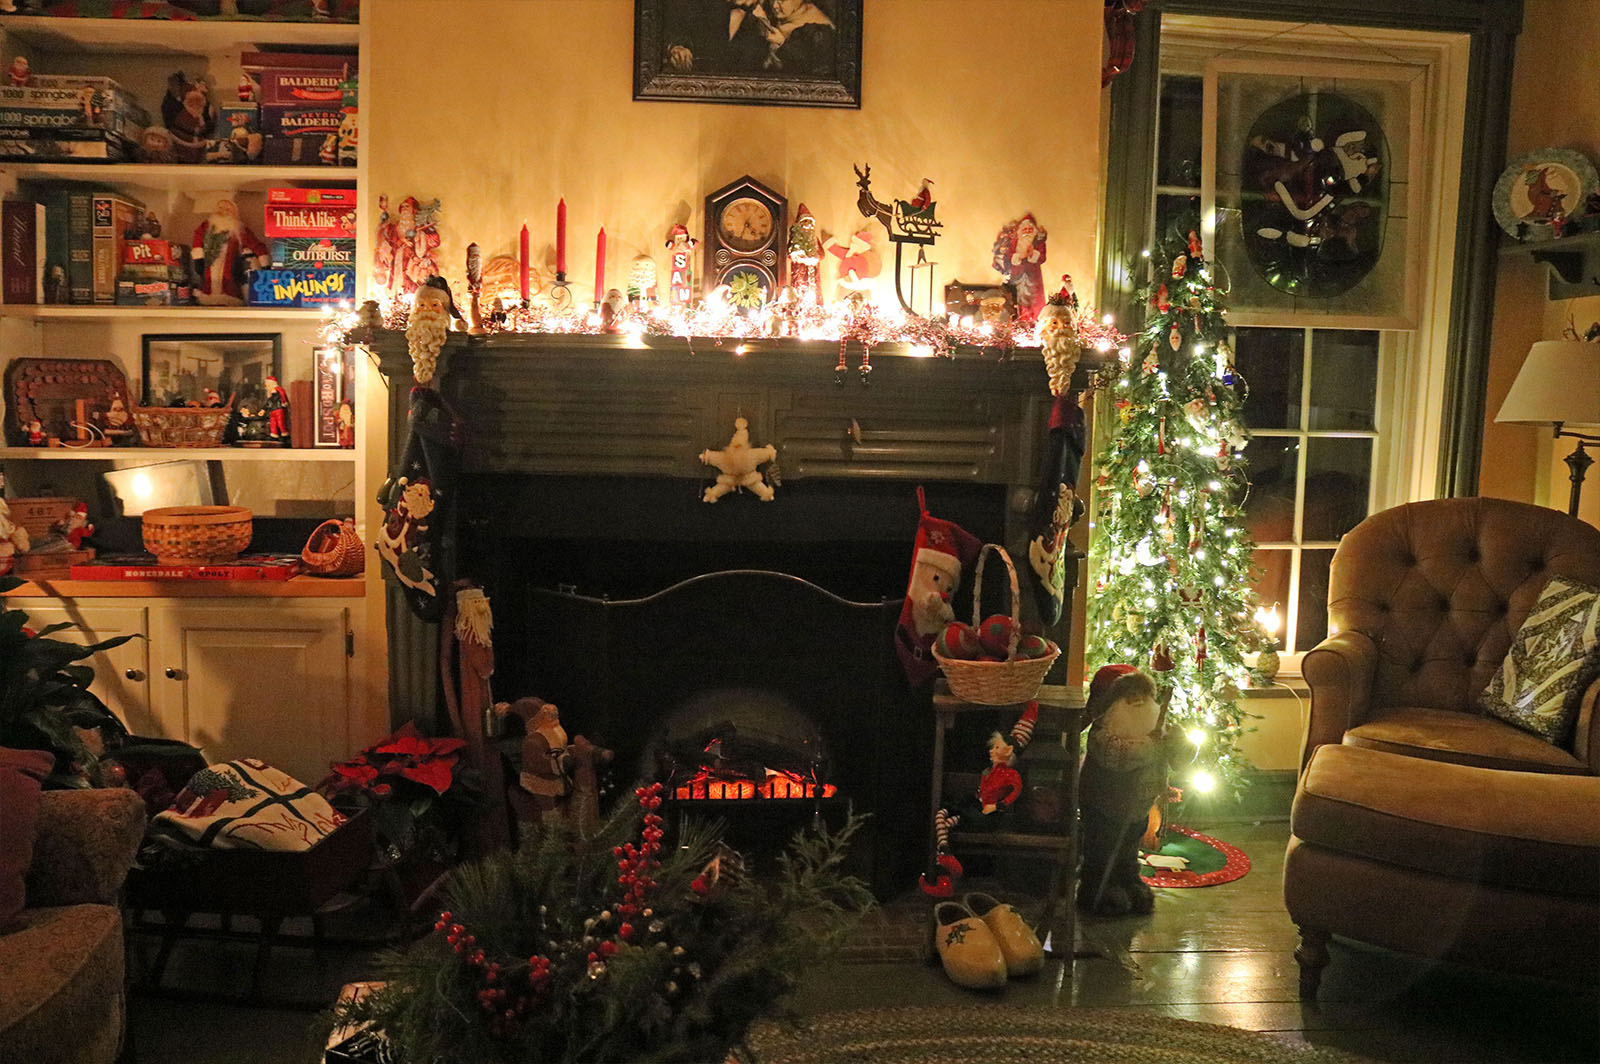 Fireplace in Santa, James Manning B&B, Honesdale, PA - James Manning